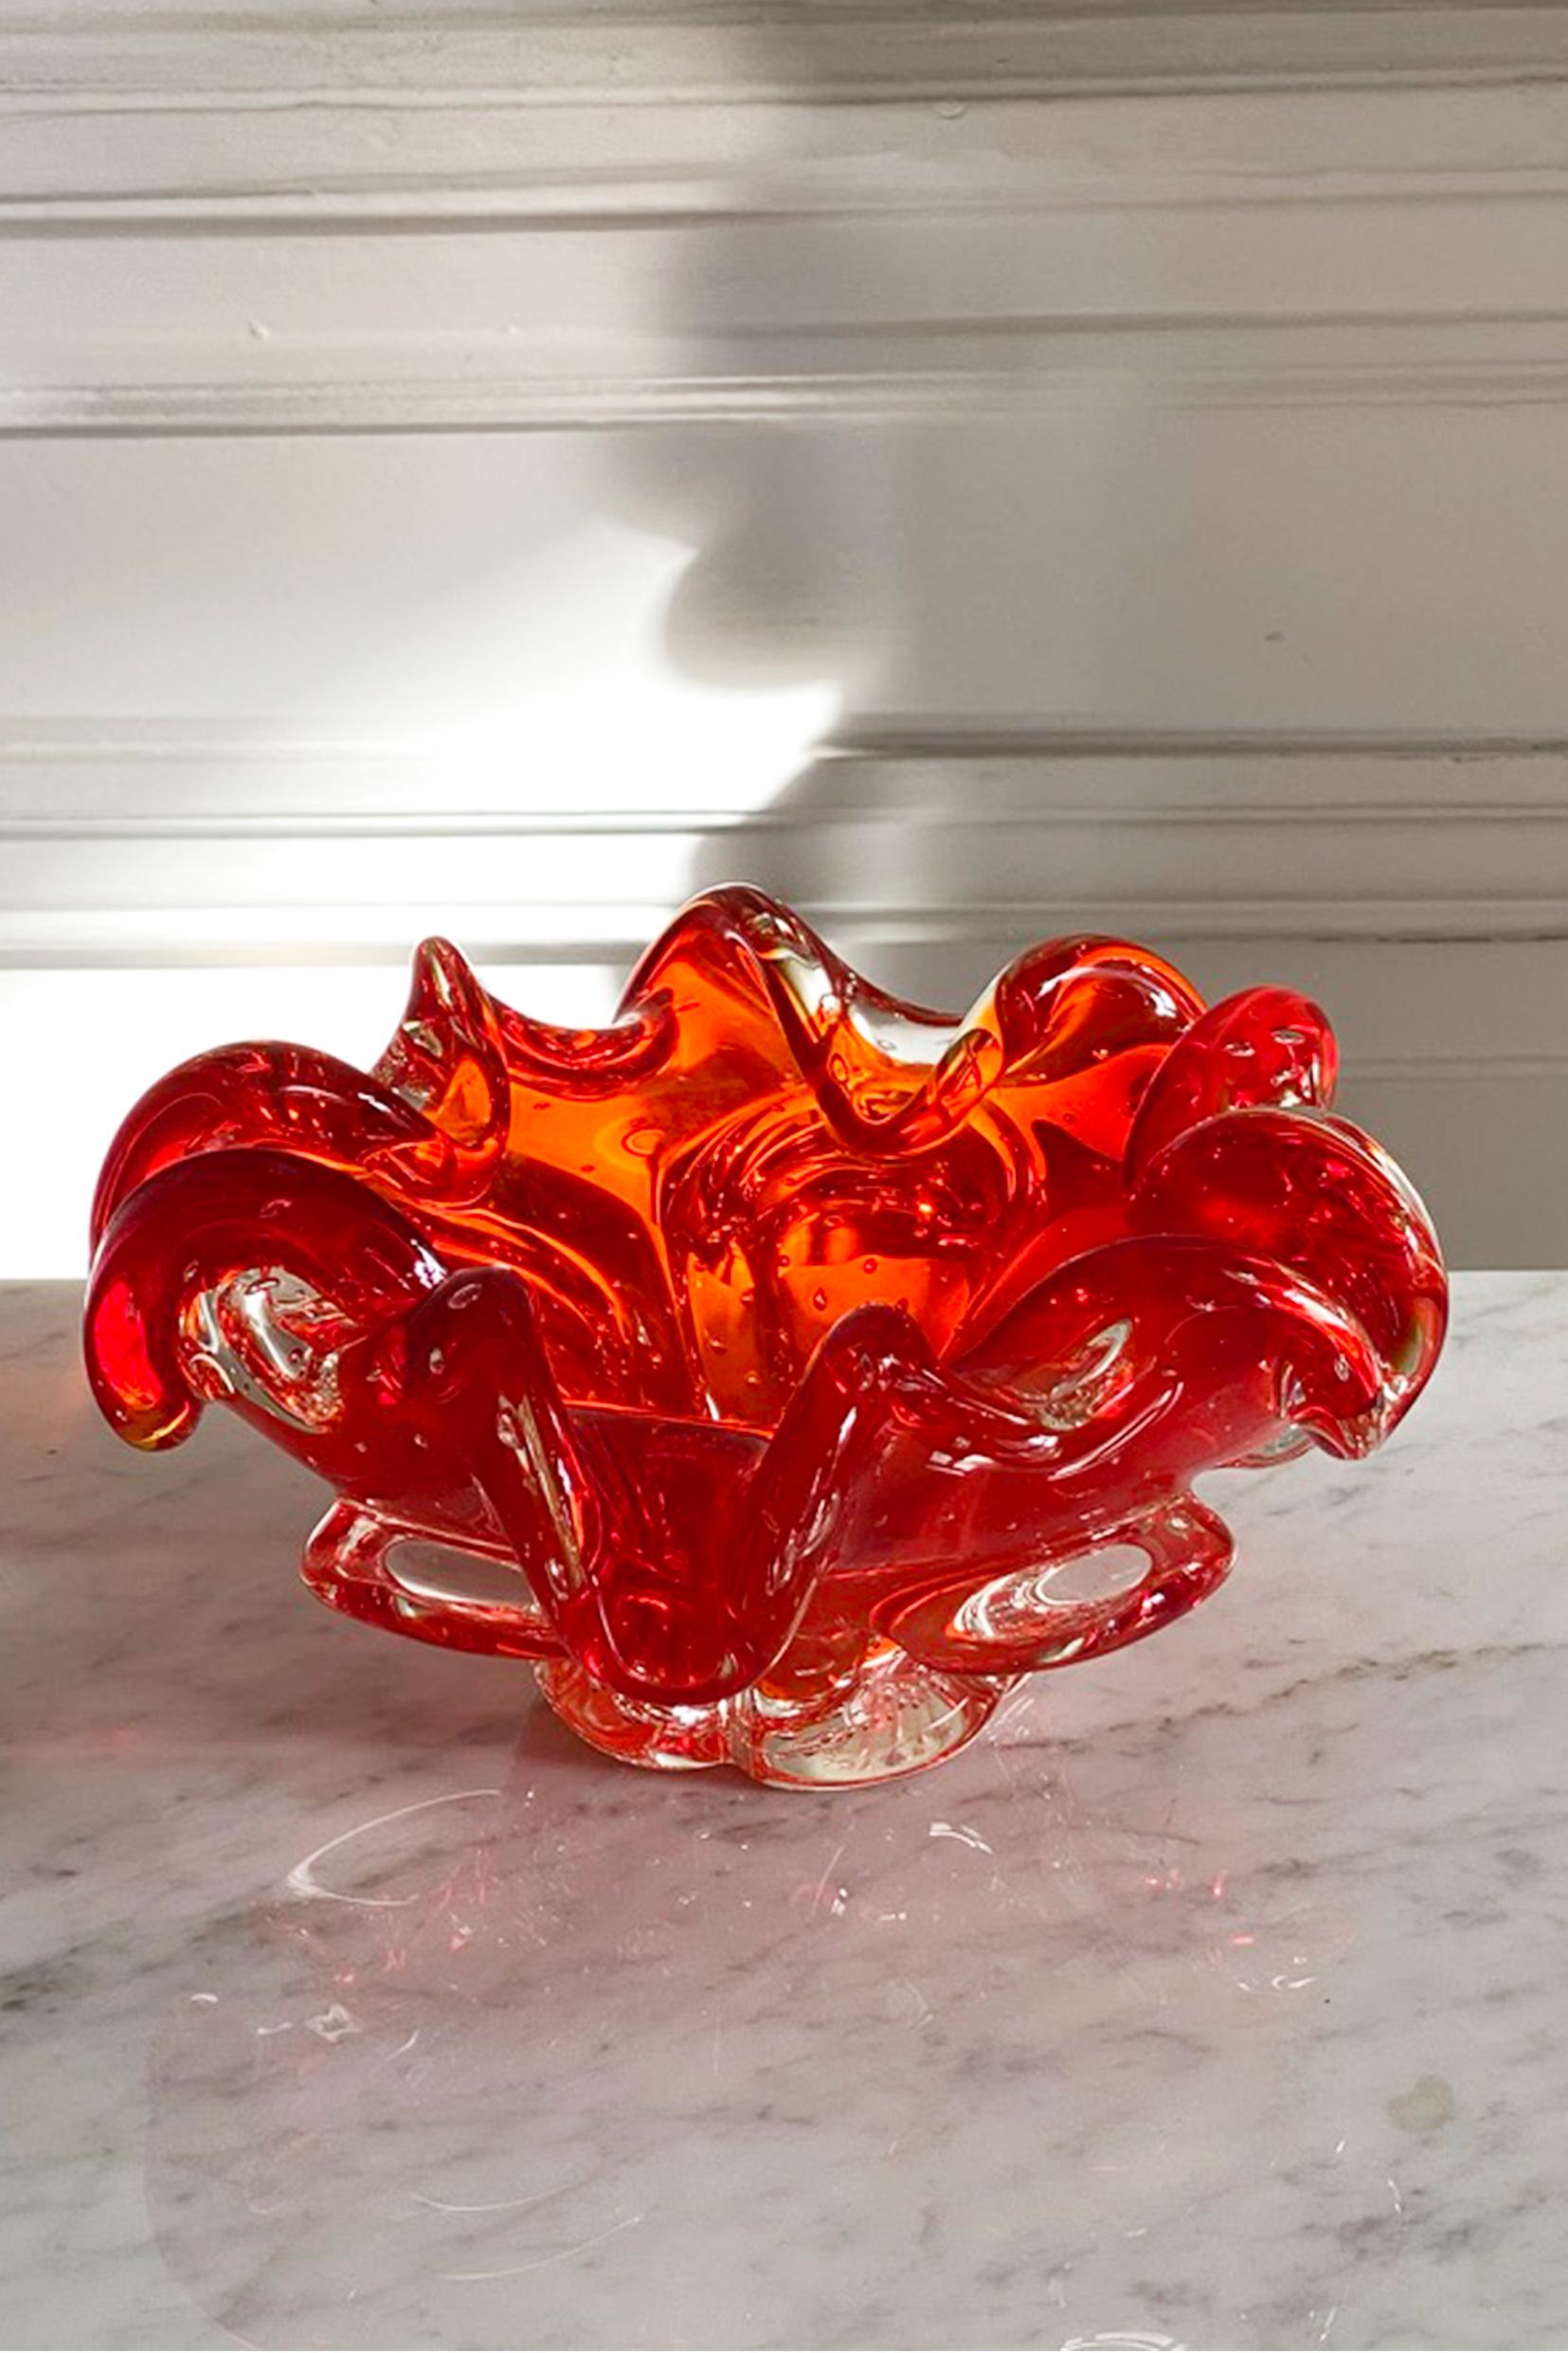 Schale aus rotem und durchscheinendem Muranoglas. Italien, 1950er Jahre.

Farben: Rouge und Gold.

Was ist Muranoglas? Wurde das Glas an einem besonderen Ort hergestellt? Oder mit speziellen Techniken hergestellt? Eigentlich ist es beides.